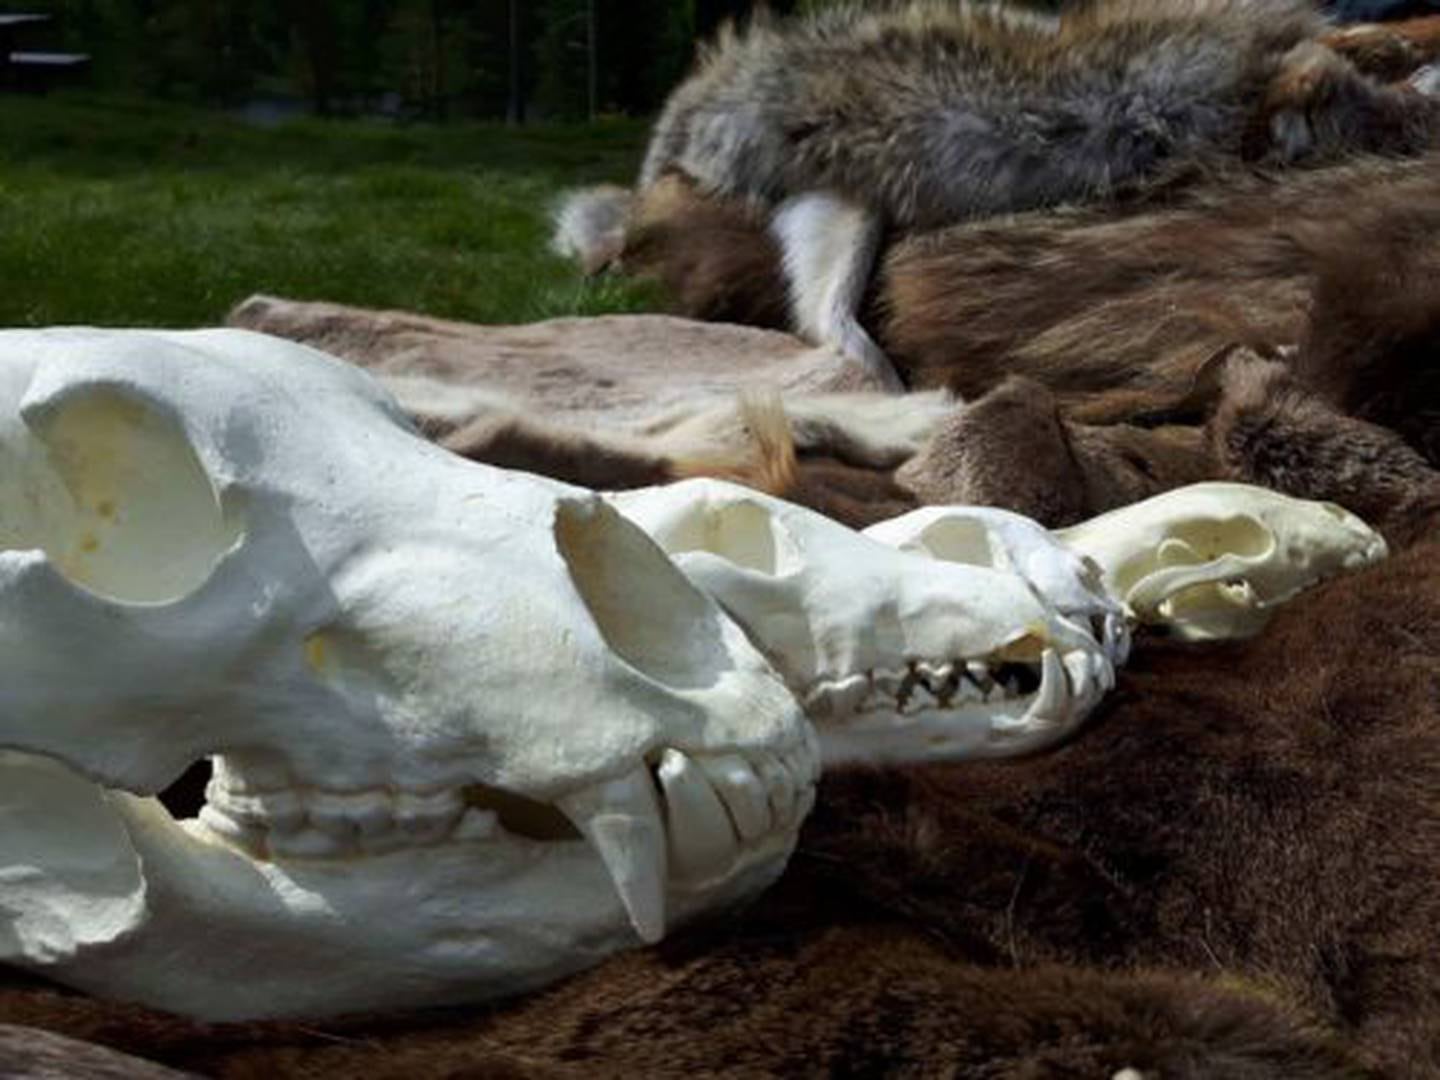 Lørdag 1. juli kommer Besøkssenter rovdyr Flå til Besøkssenter Ytre Hvaler nasjonalpark for å fortelle om ulven. De har med seg skinn, skaller, spor og andre effekter for å lage en lærerik dag for store og små.